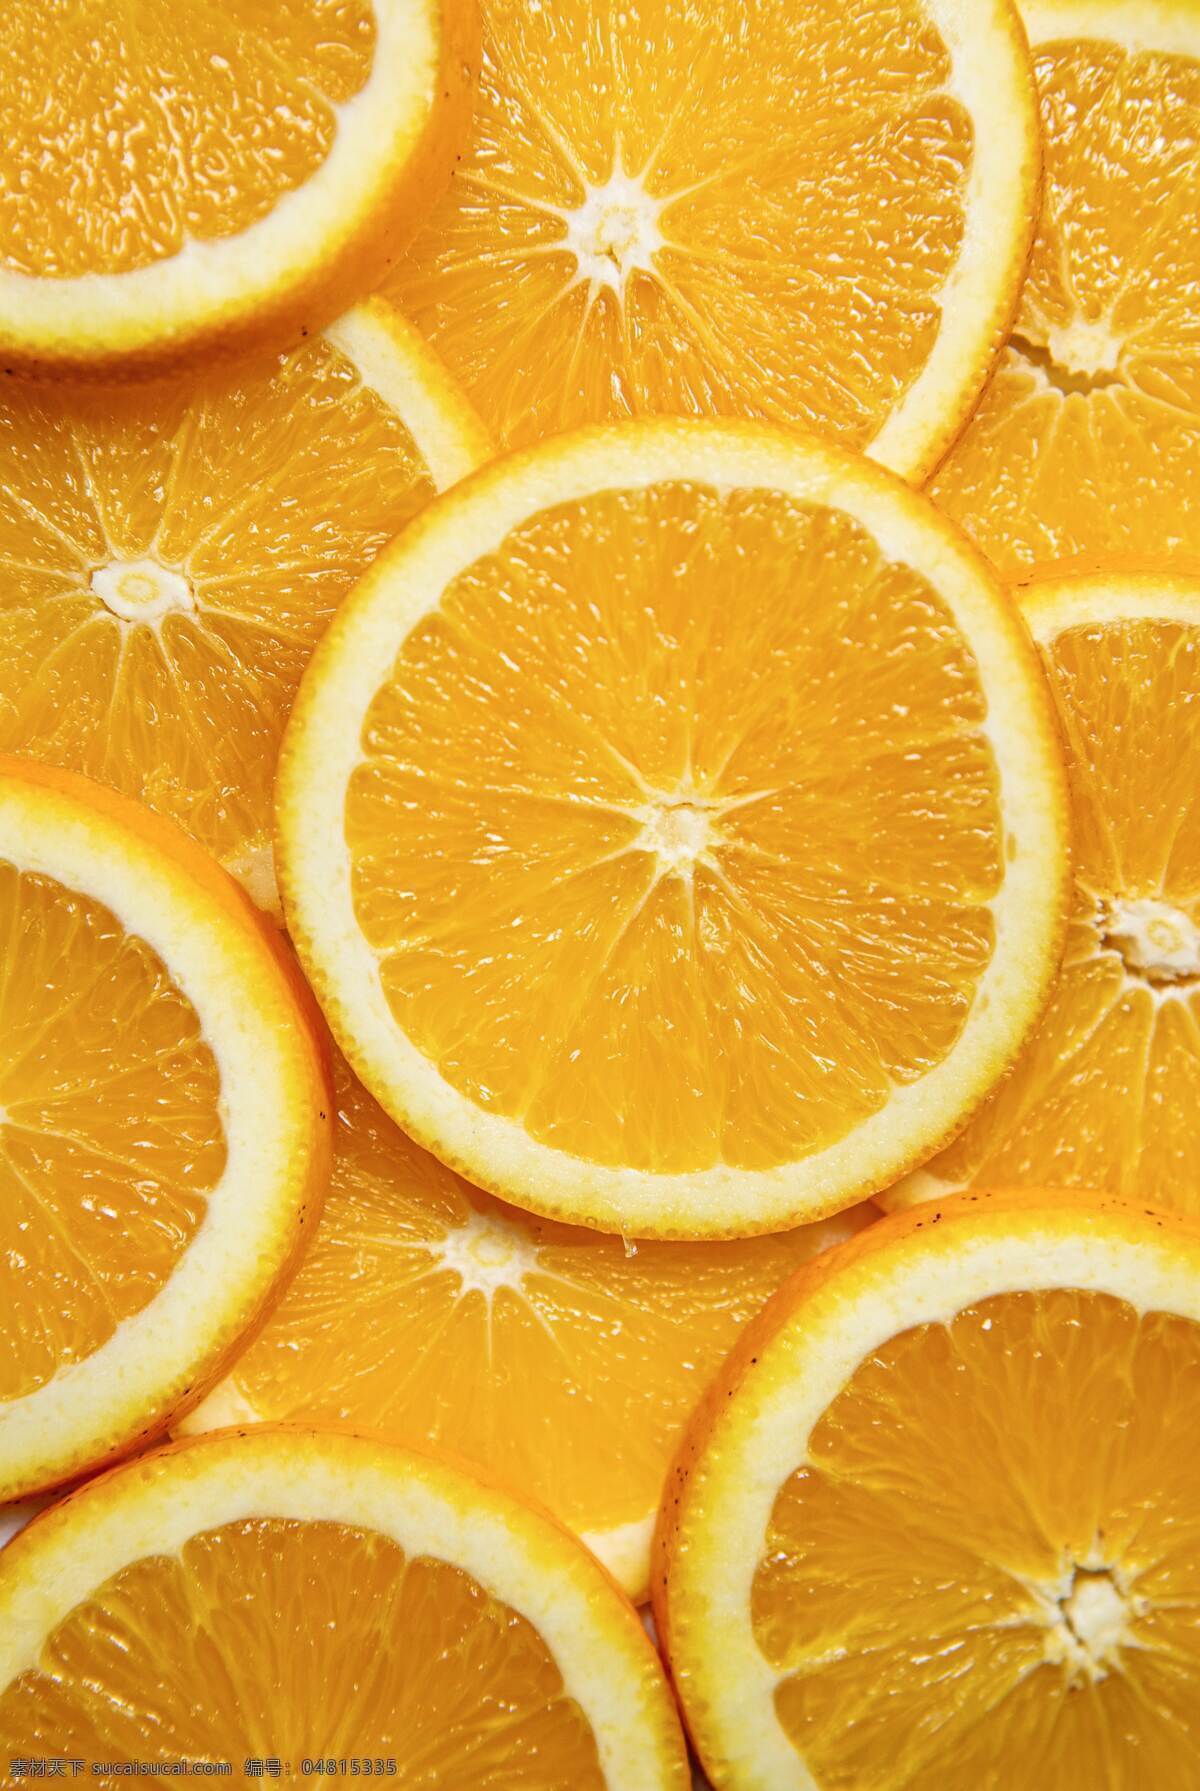 橙子切片 切片 橙子 橙 水果 瓜果 橙色 新鲜 自然 天然 食物 美食 生物世界